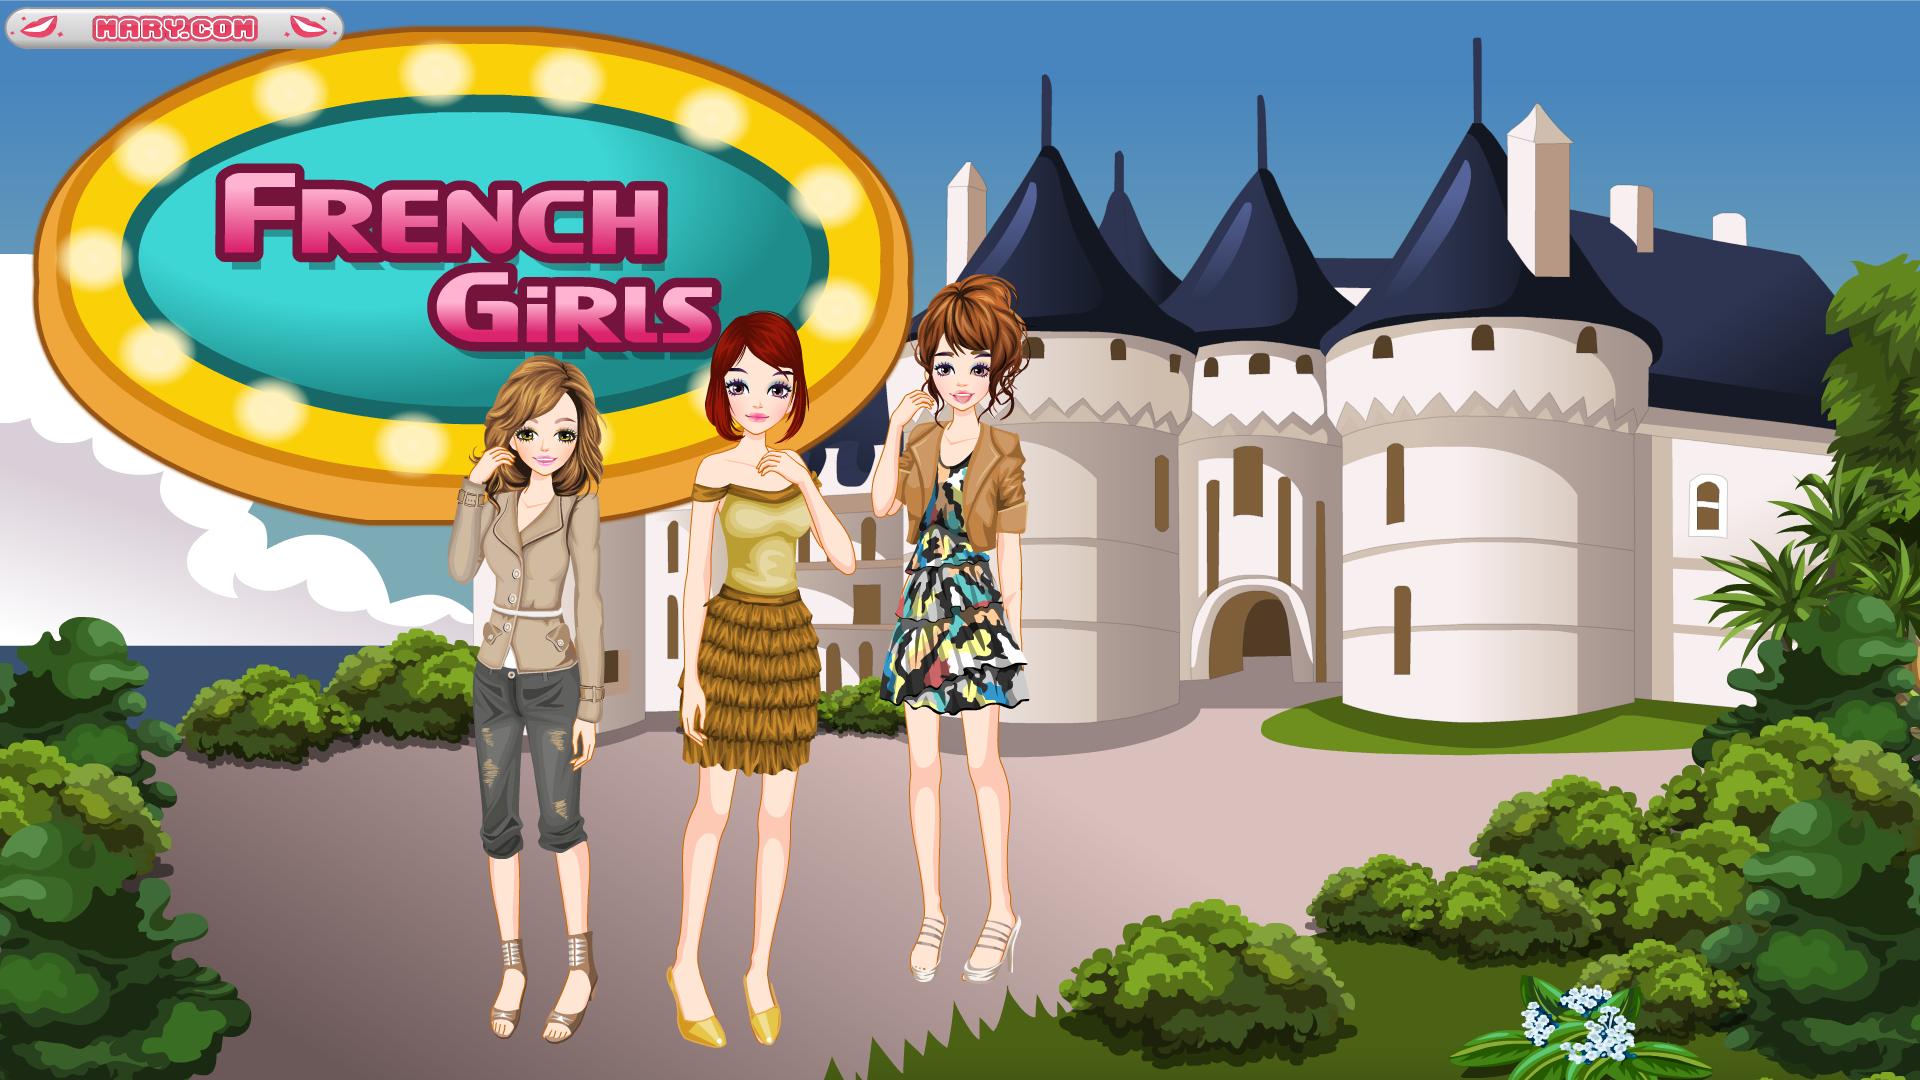 French games. French игра. Французские игры для детей. Игра про трех девочек. Игра модное агентство.